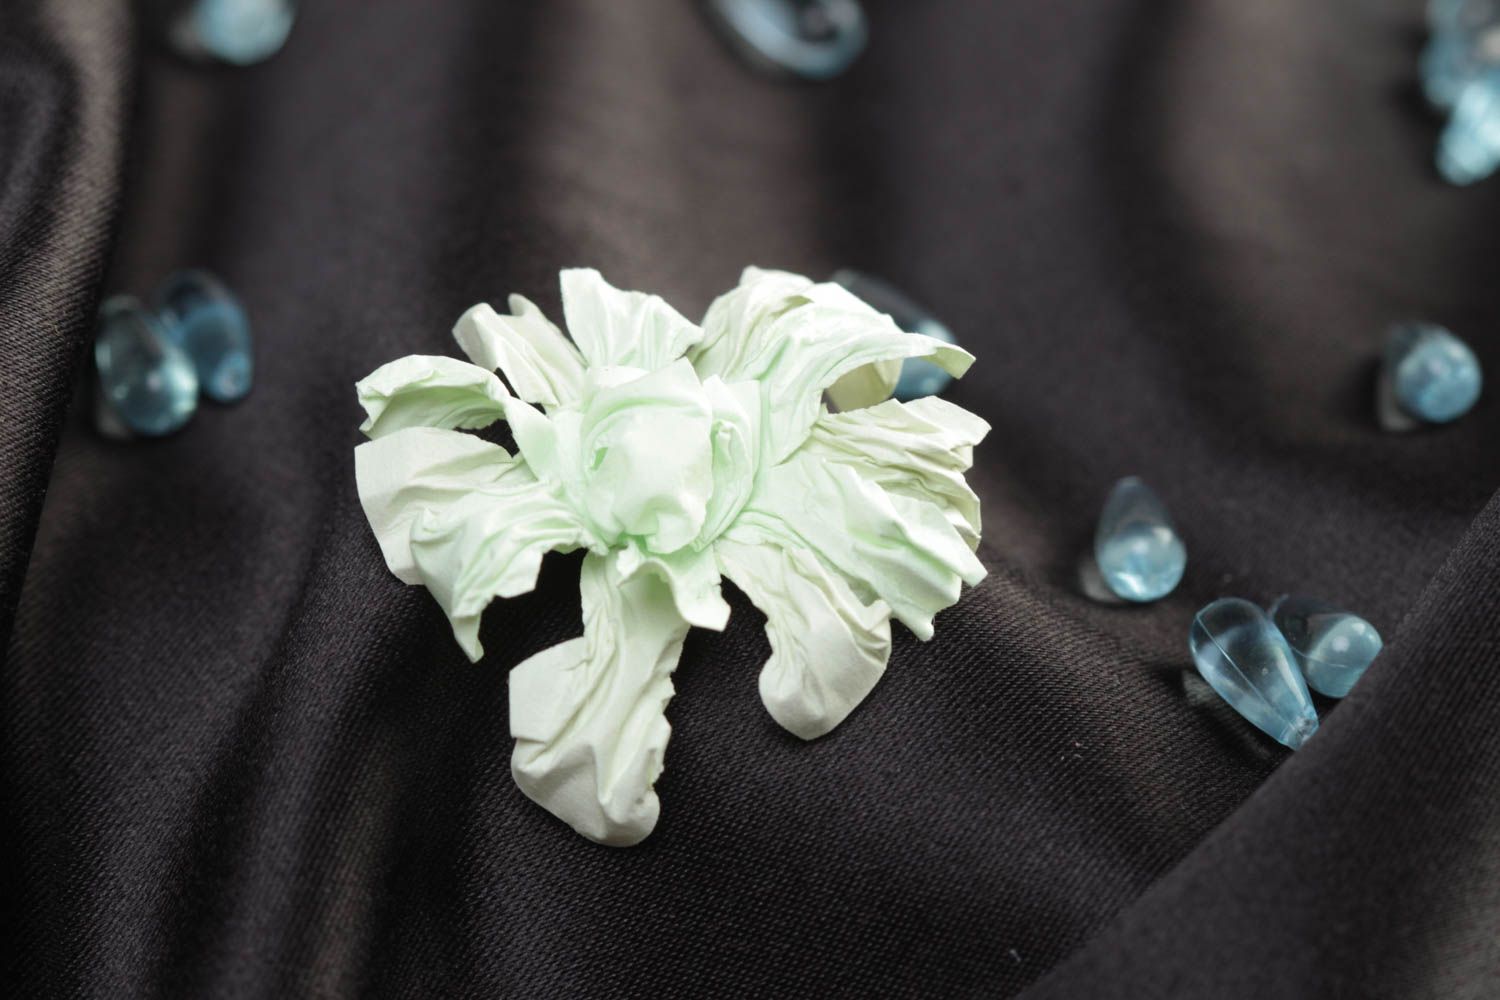 Объемный цветок из бумаги ручной работы расписанный акварелью белый скрапбукинг фото 1